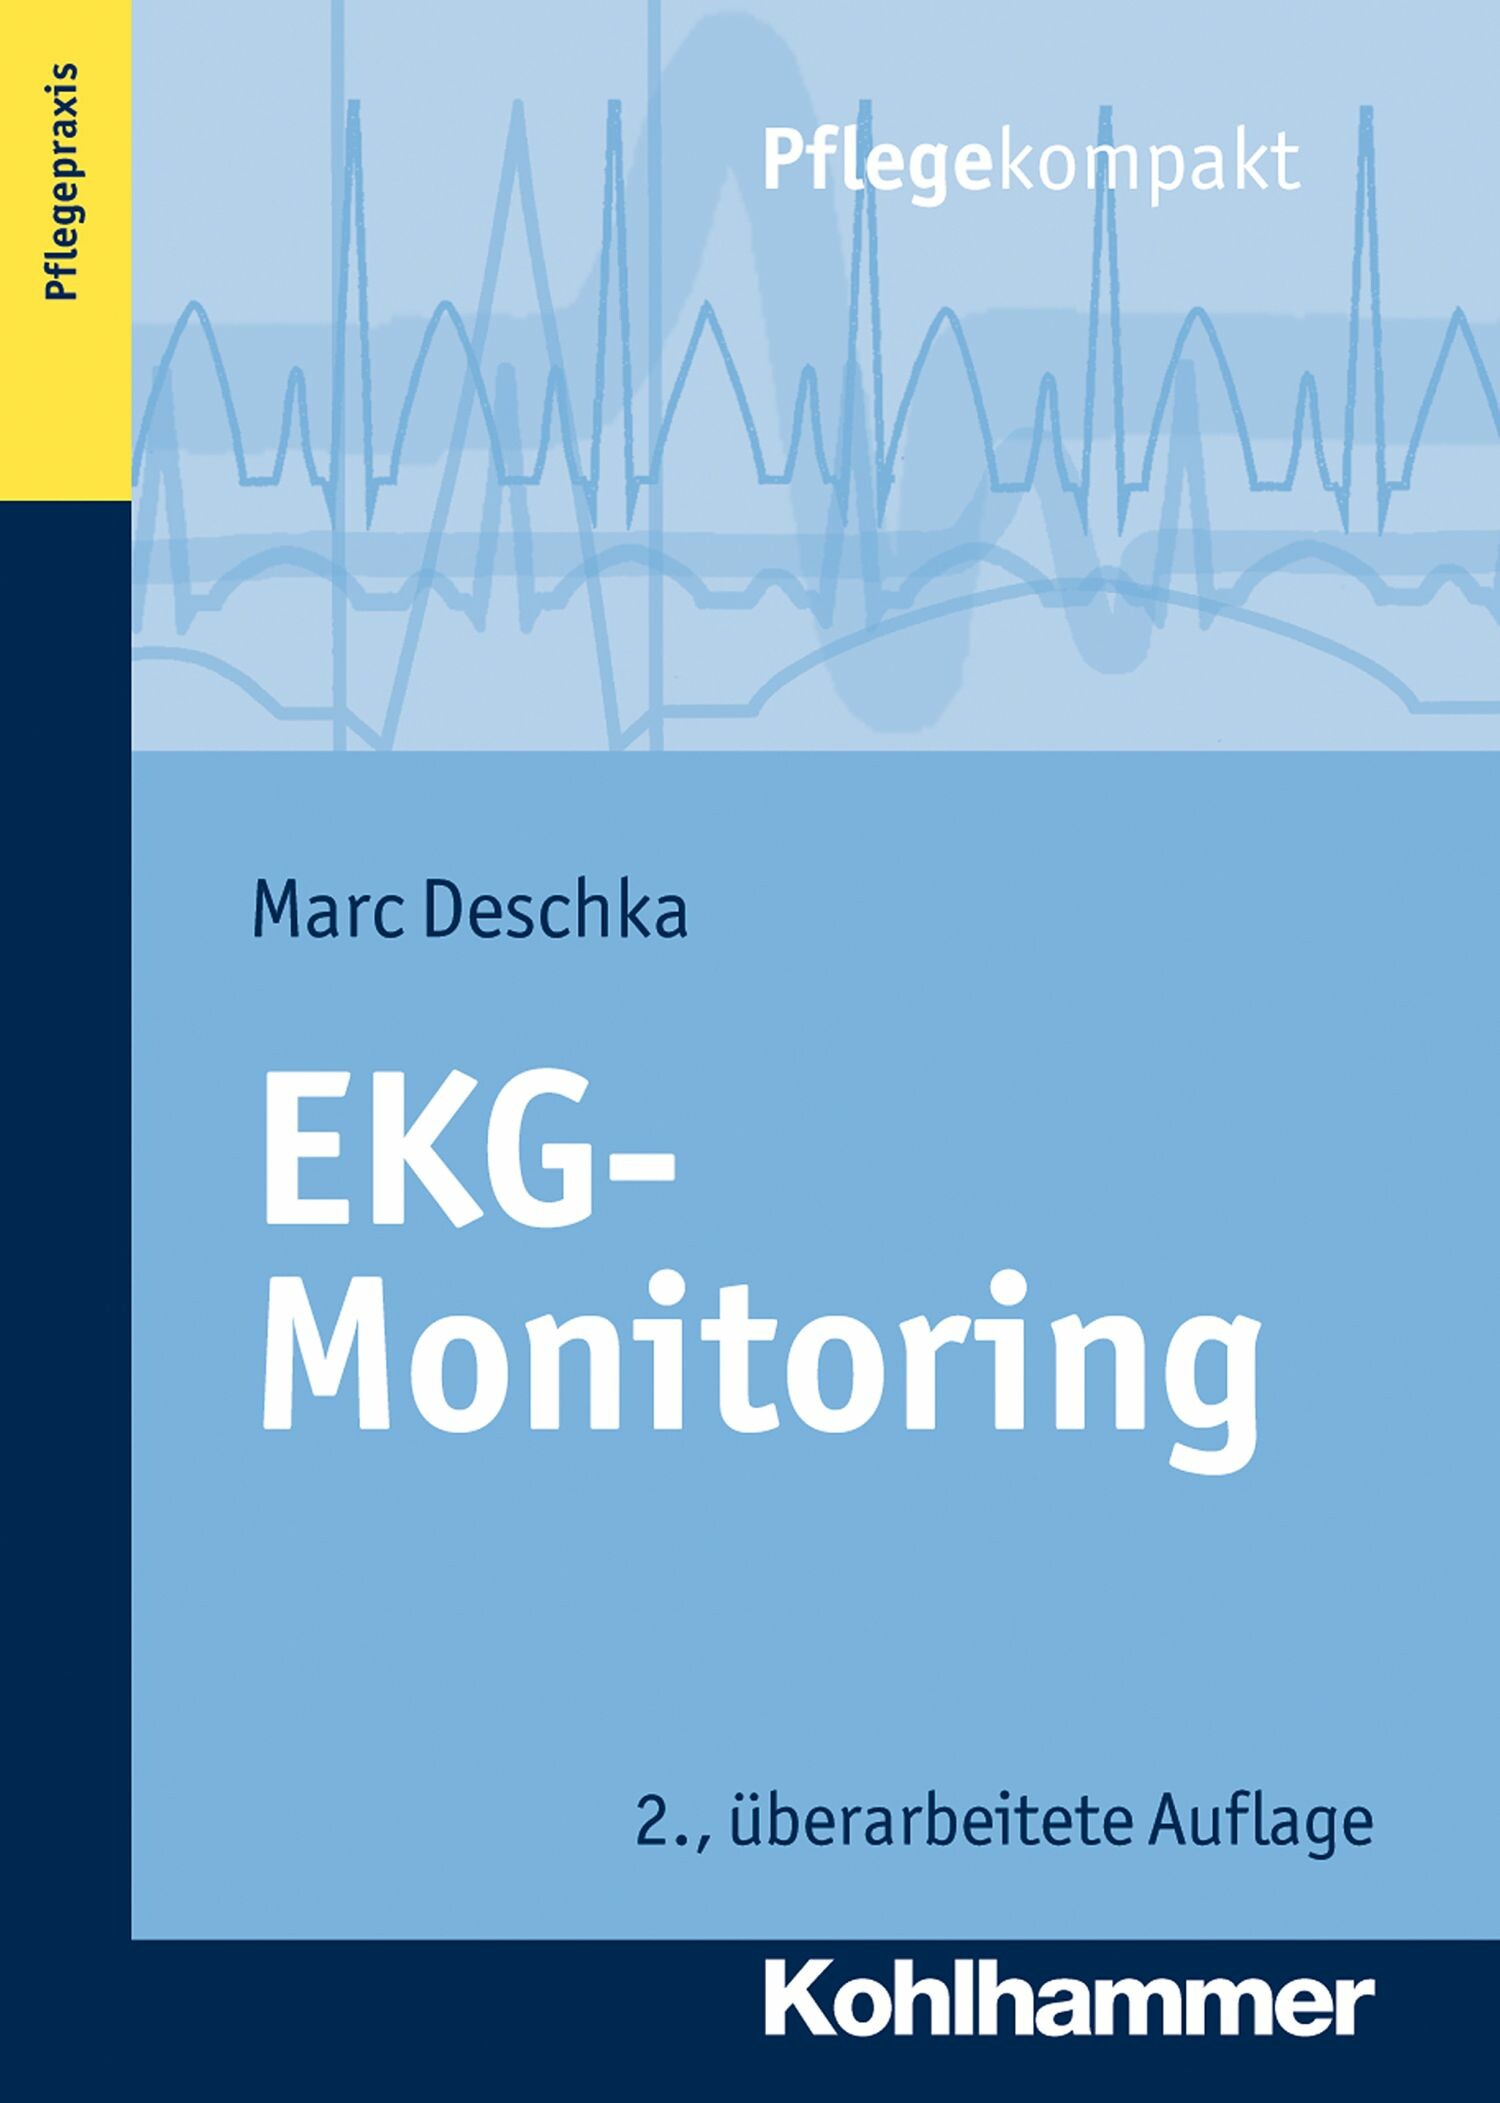 EKG-Monitoring